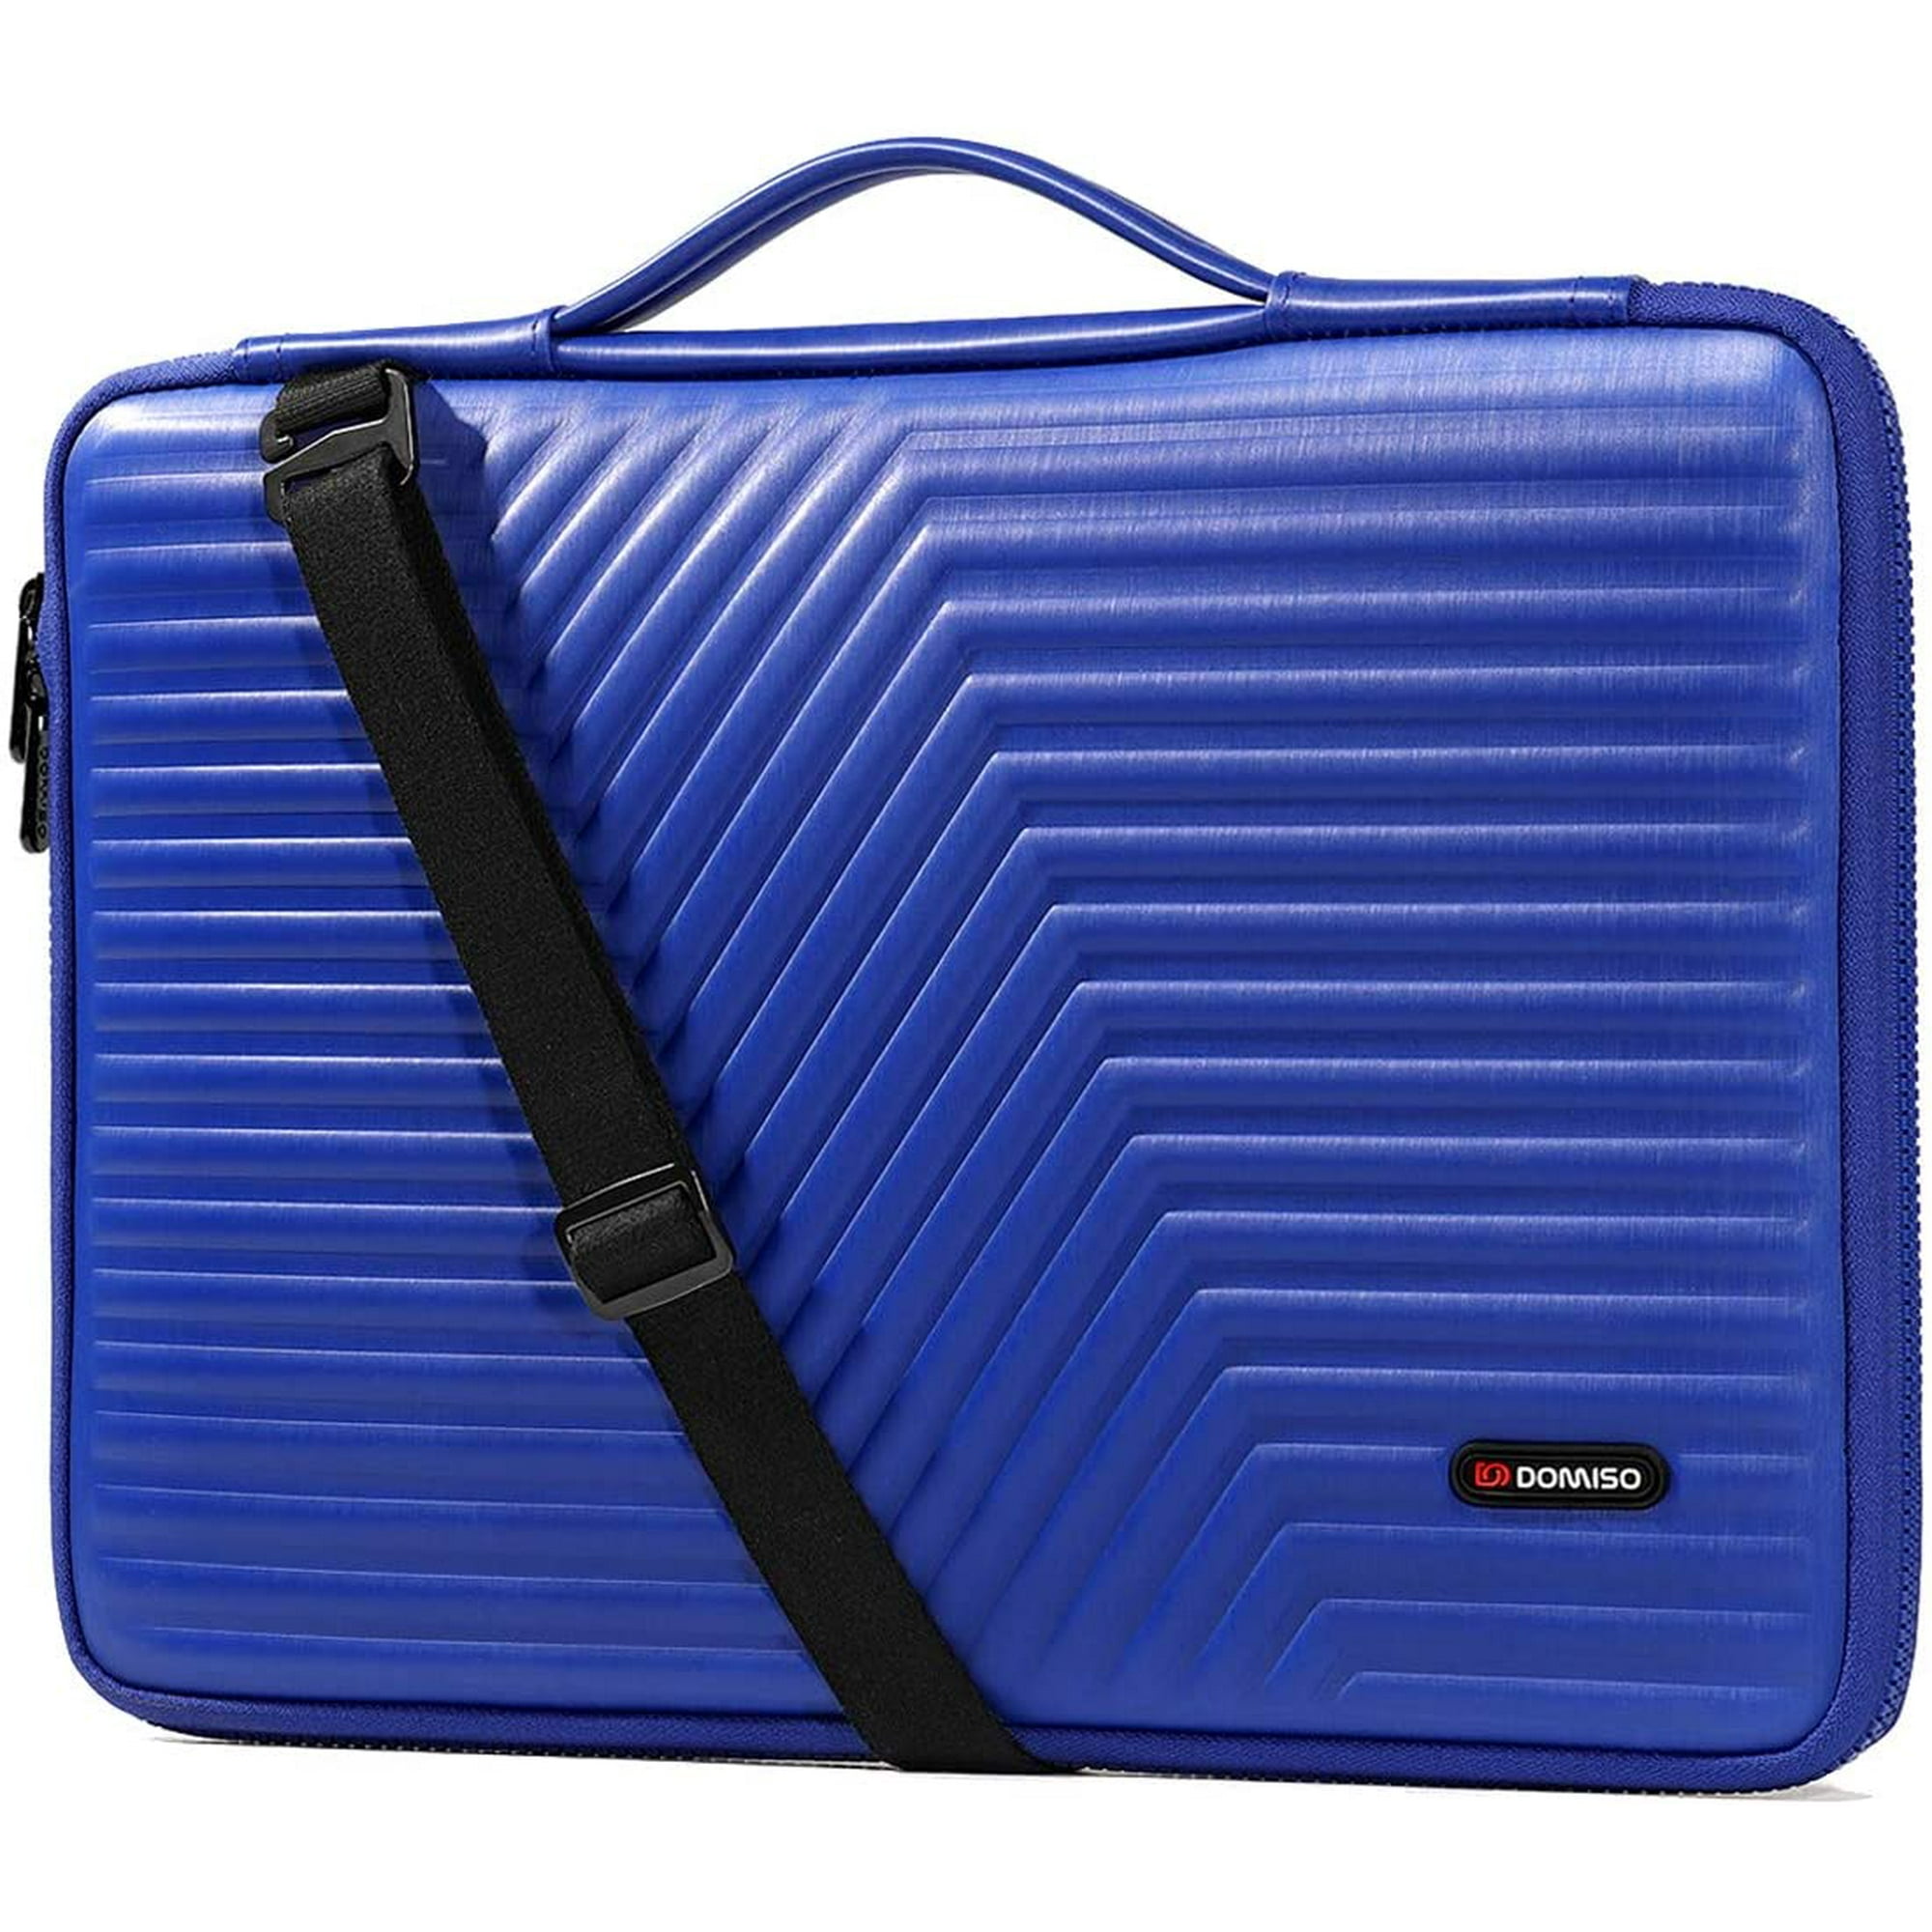 DOMISO 15.6 inch Laptop Sleeve Shoulder Bag Shockproof Case Waterproof  Protective EVA Handbag for 15.6